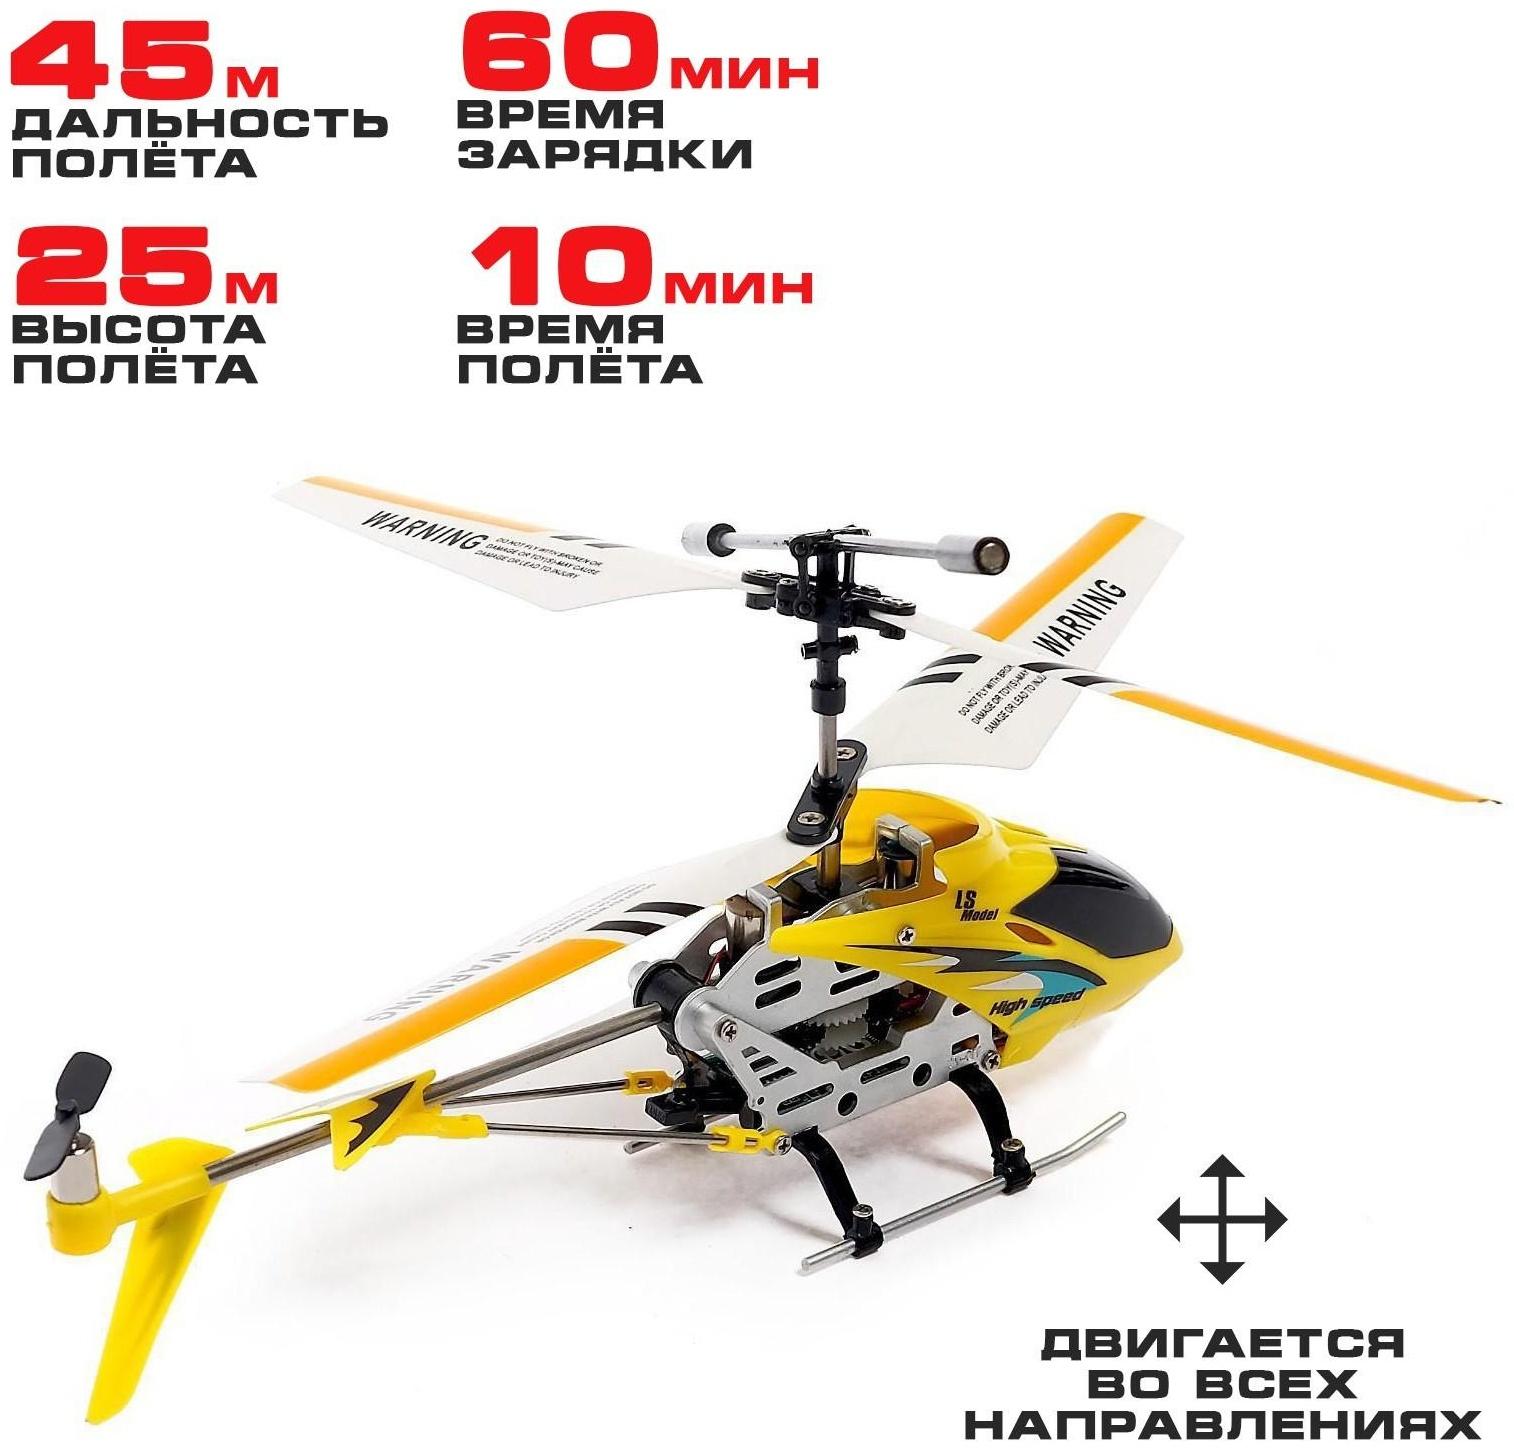 Вертолет радиоуправляемый SKY с гироскопом, цвет жёлтый